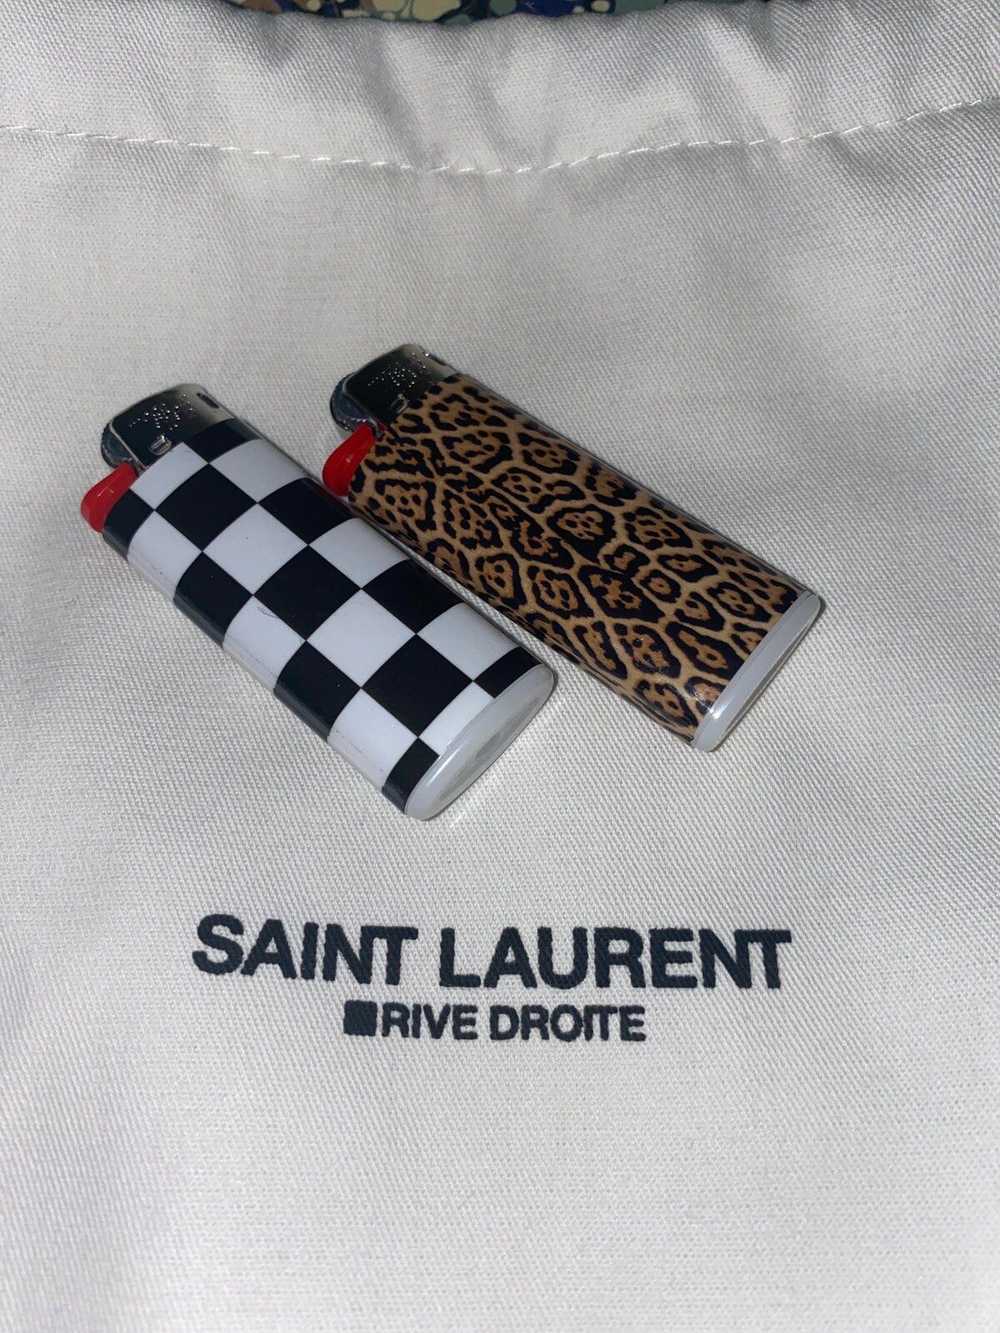 Saint Laurent Paris Saint Laurent Lighter Set - image 2